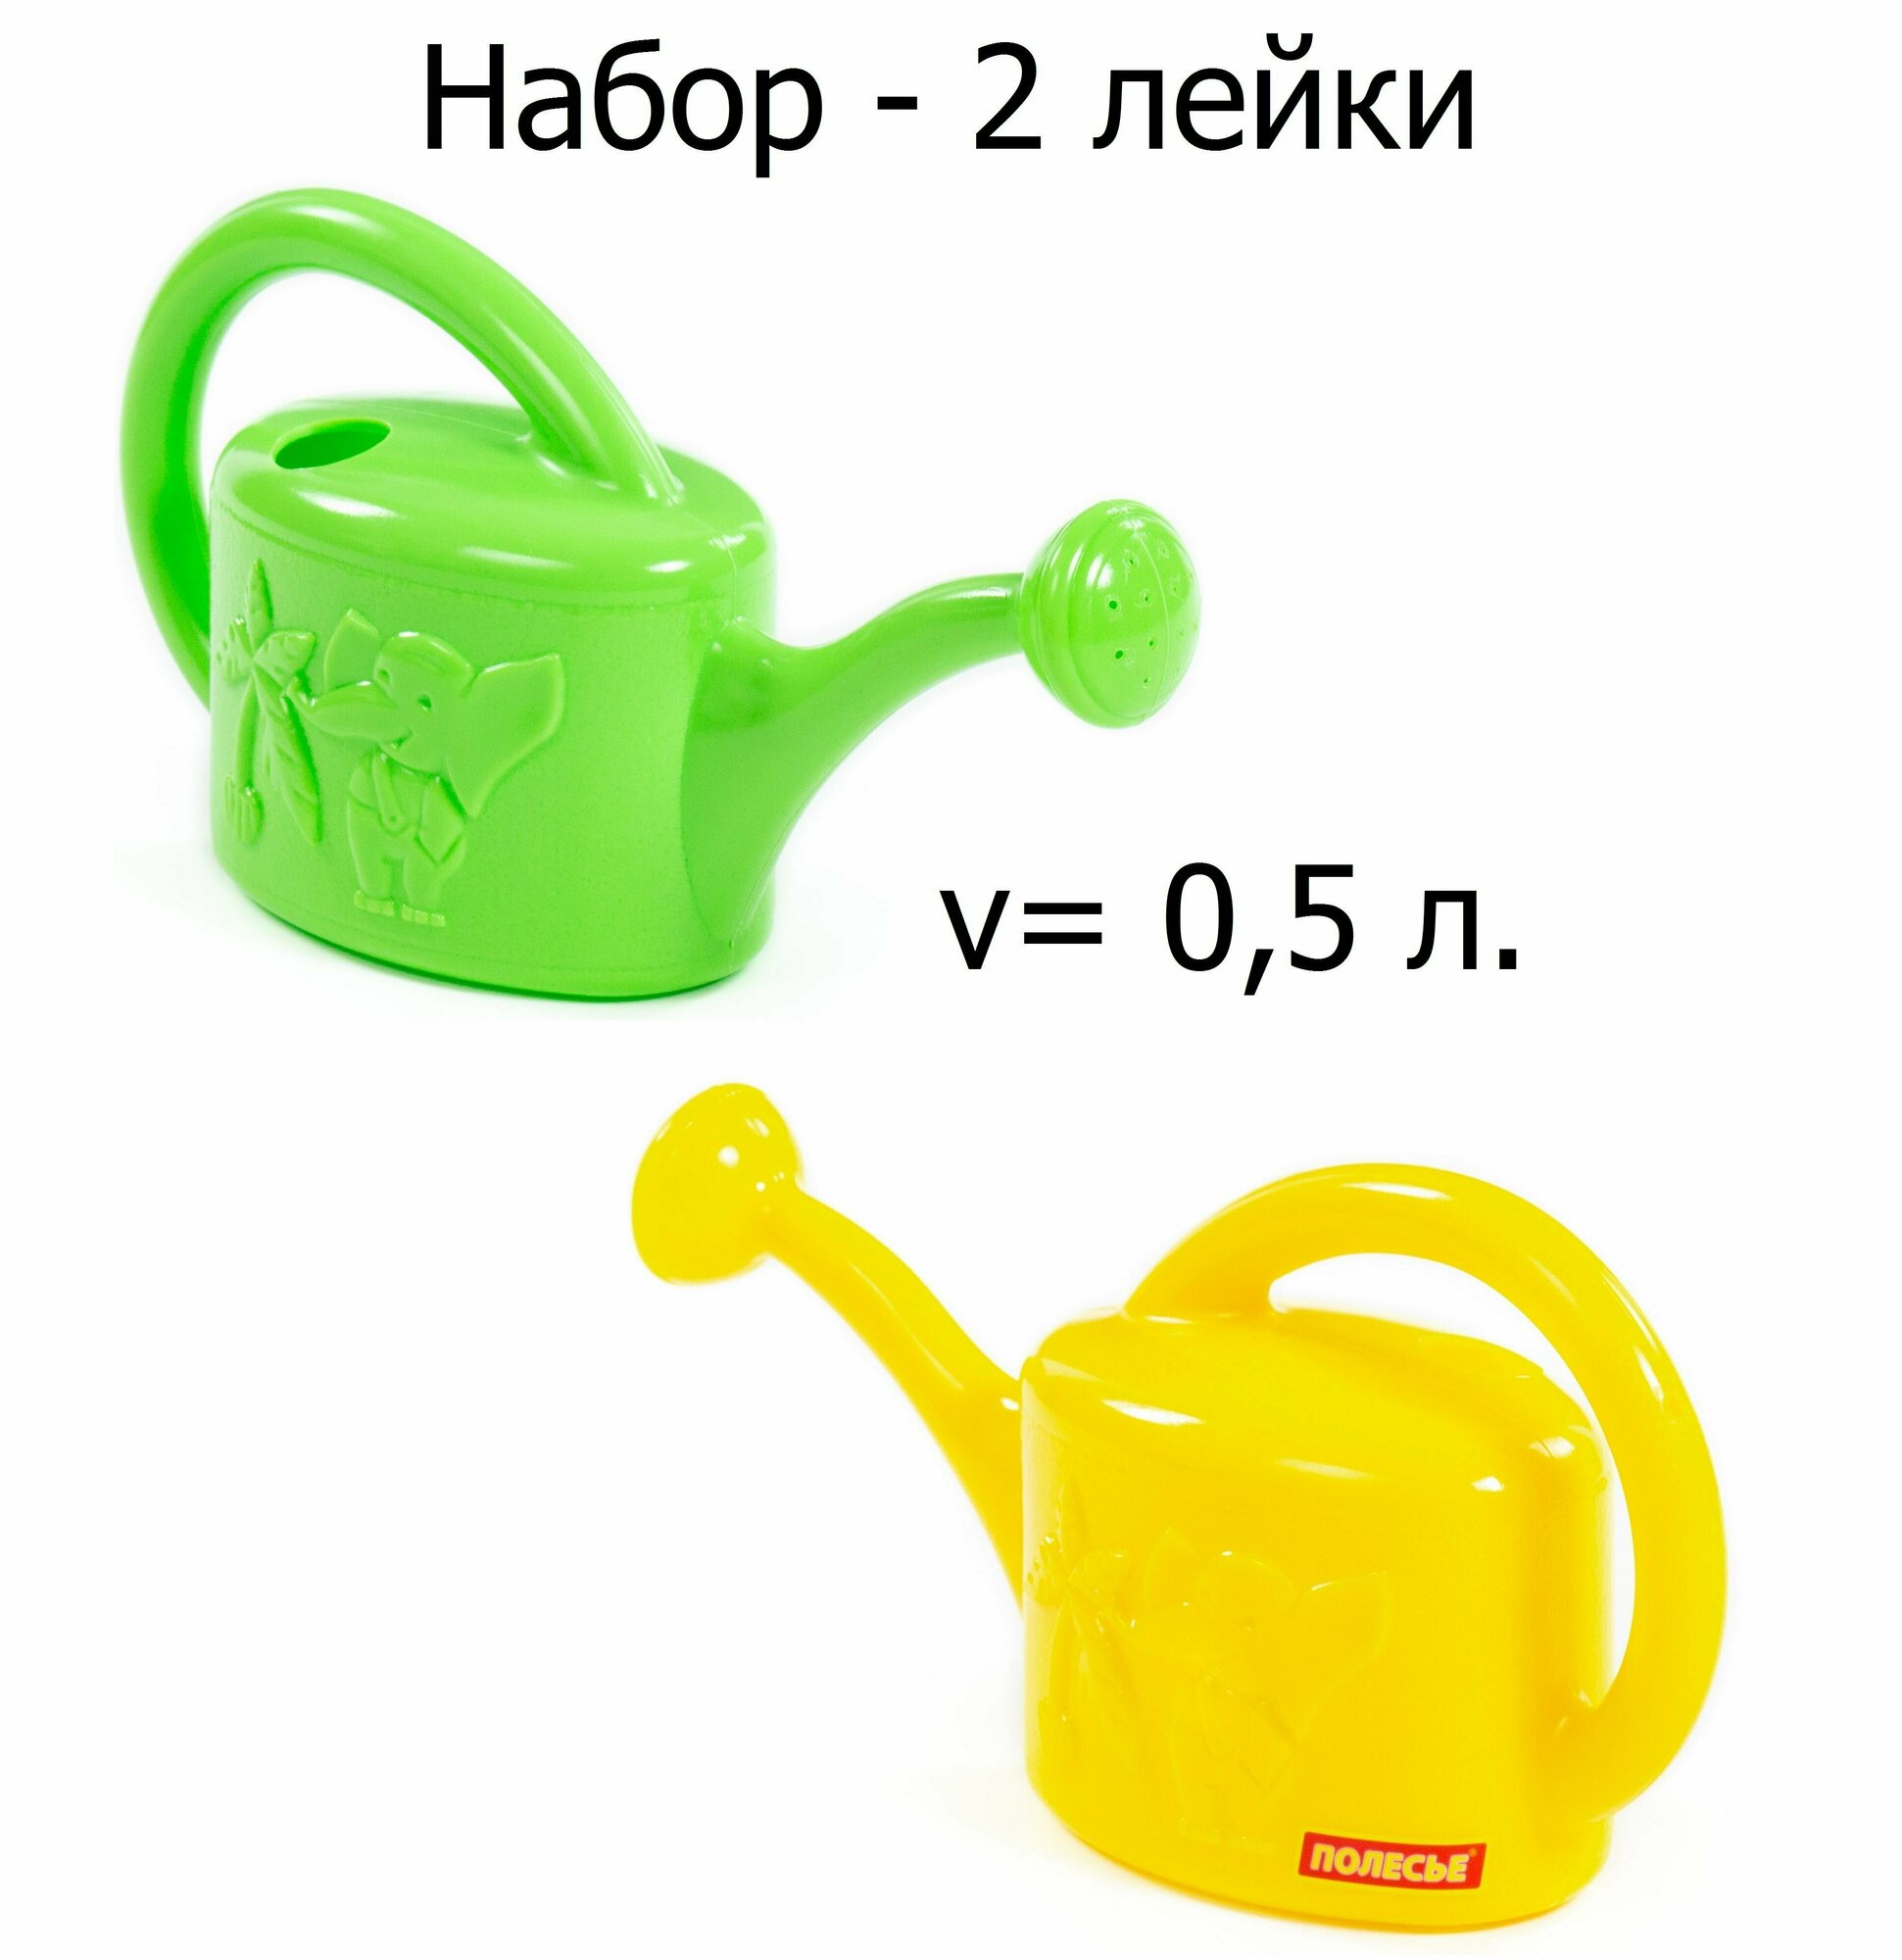 Набор из 2-х детских игрушечных леек с длинным носиком (объем 0,5 л.)